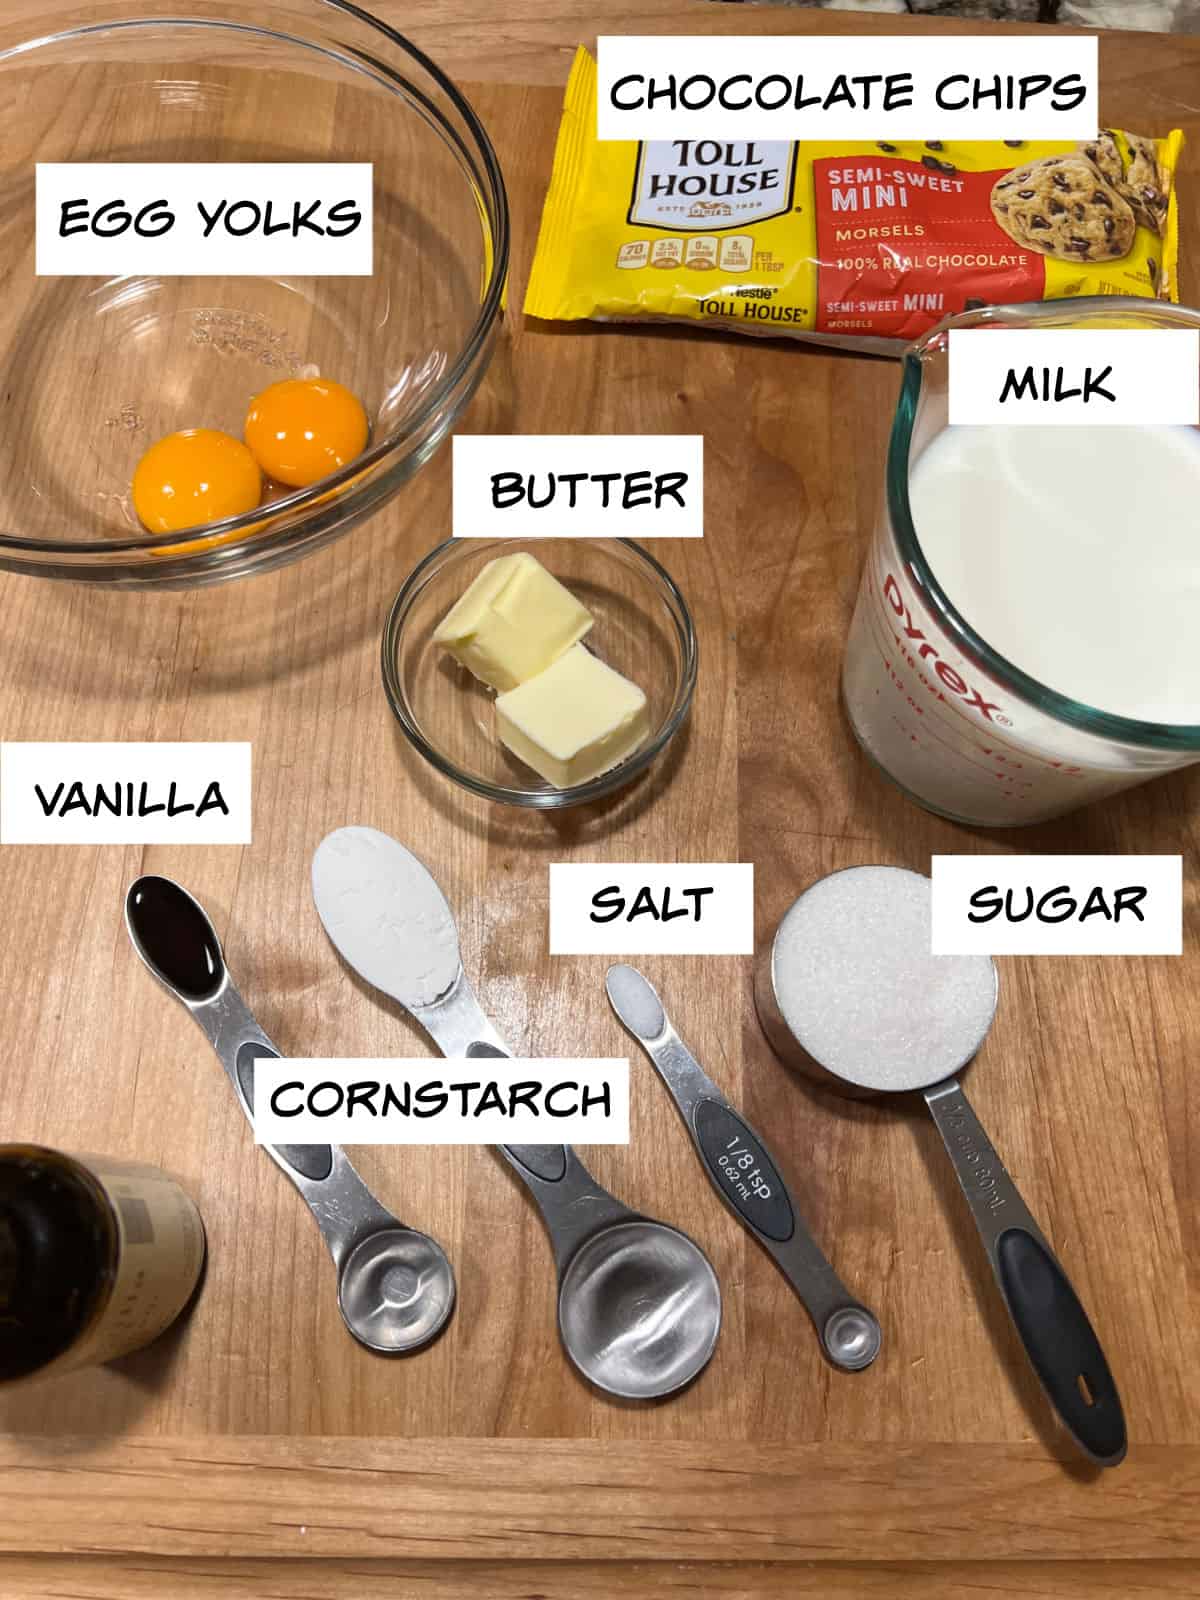 ingredients: egg yolks, chocolate chips, milk, butter, sugar, salt, cornstarch, vanilla.